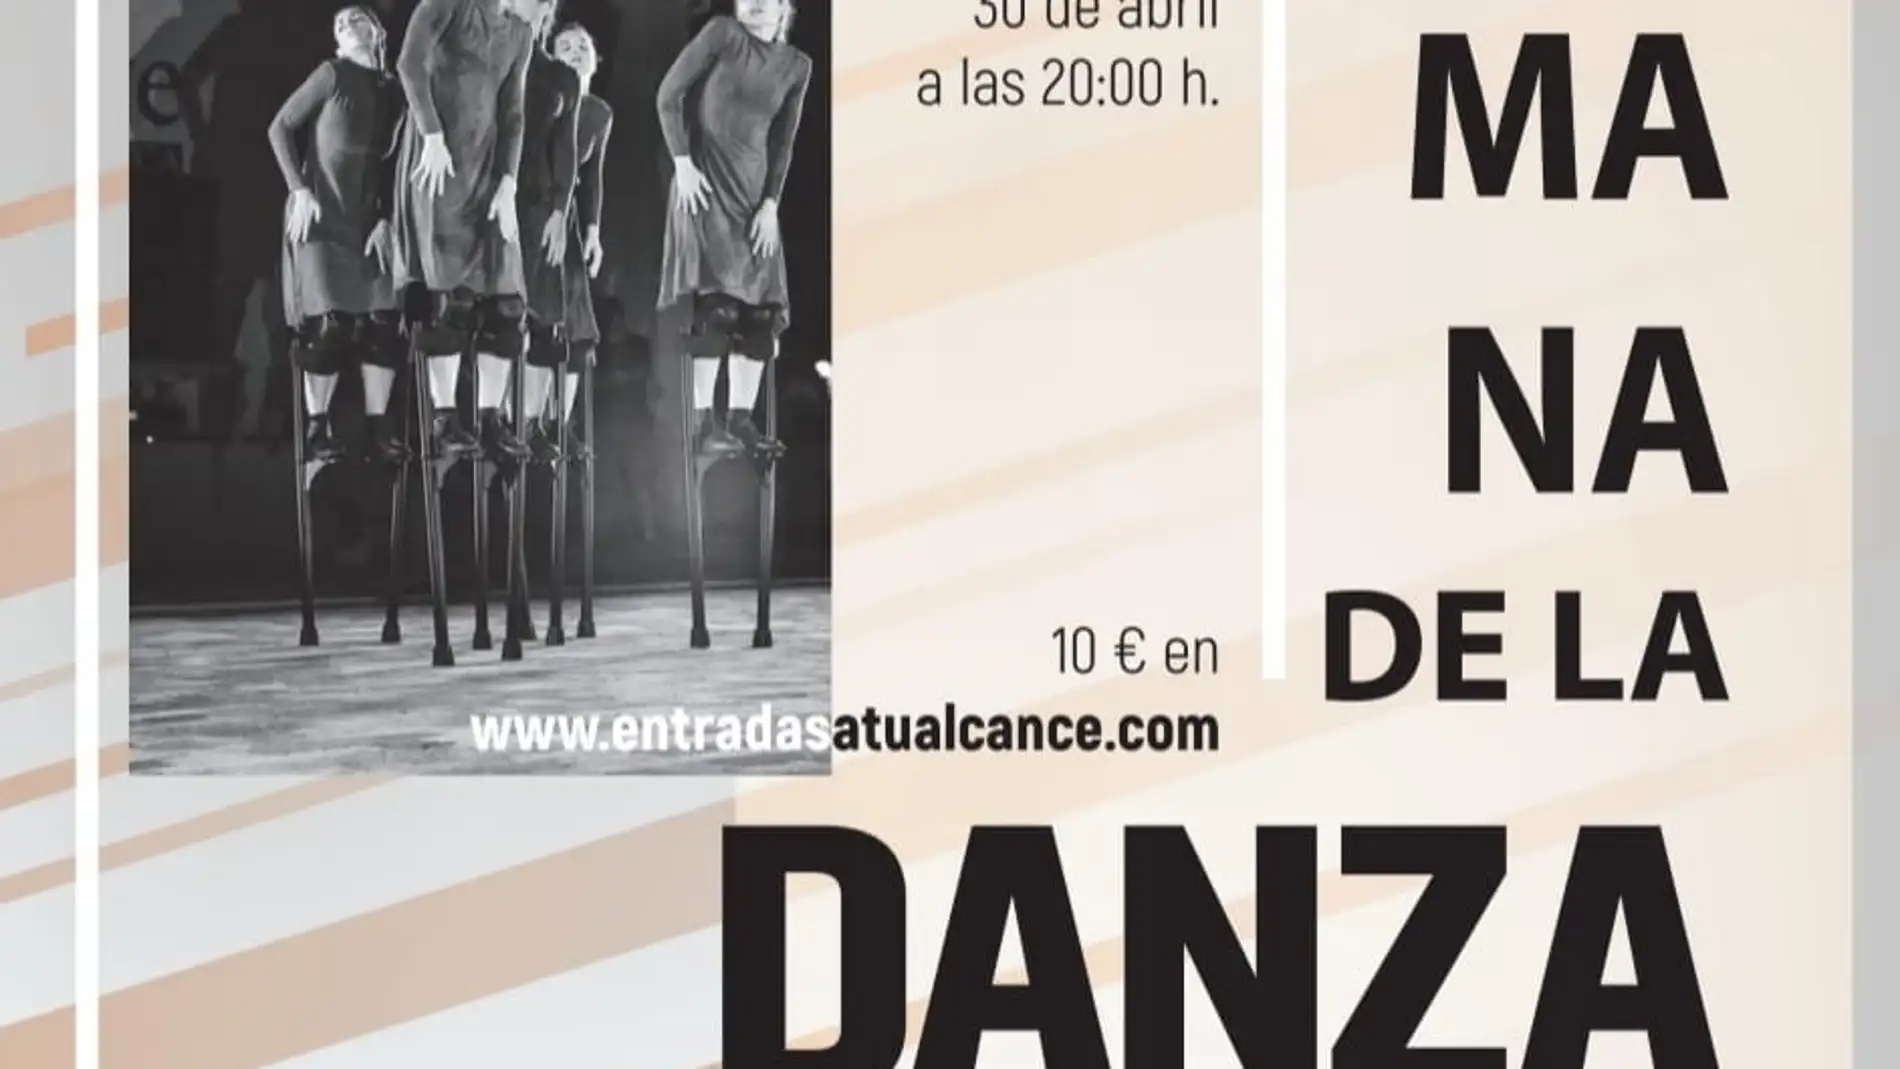 El instituto Municipal de Cultura “Joaquín Chapaprieta” anuncia que, con motivo del Día Internacional de la Danza, que se celebra mañana jueves, 29 de abril 